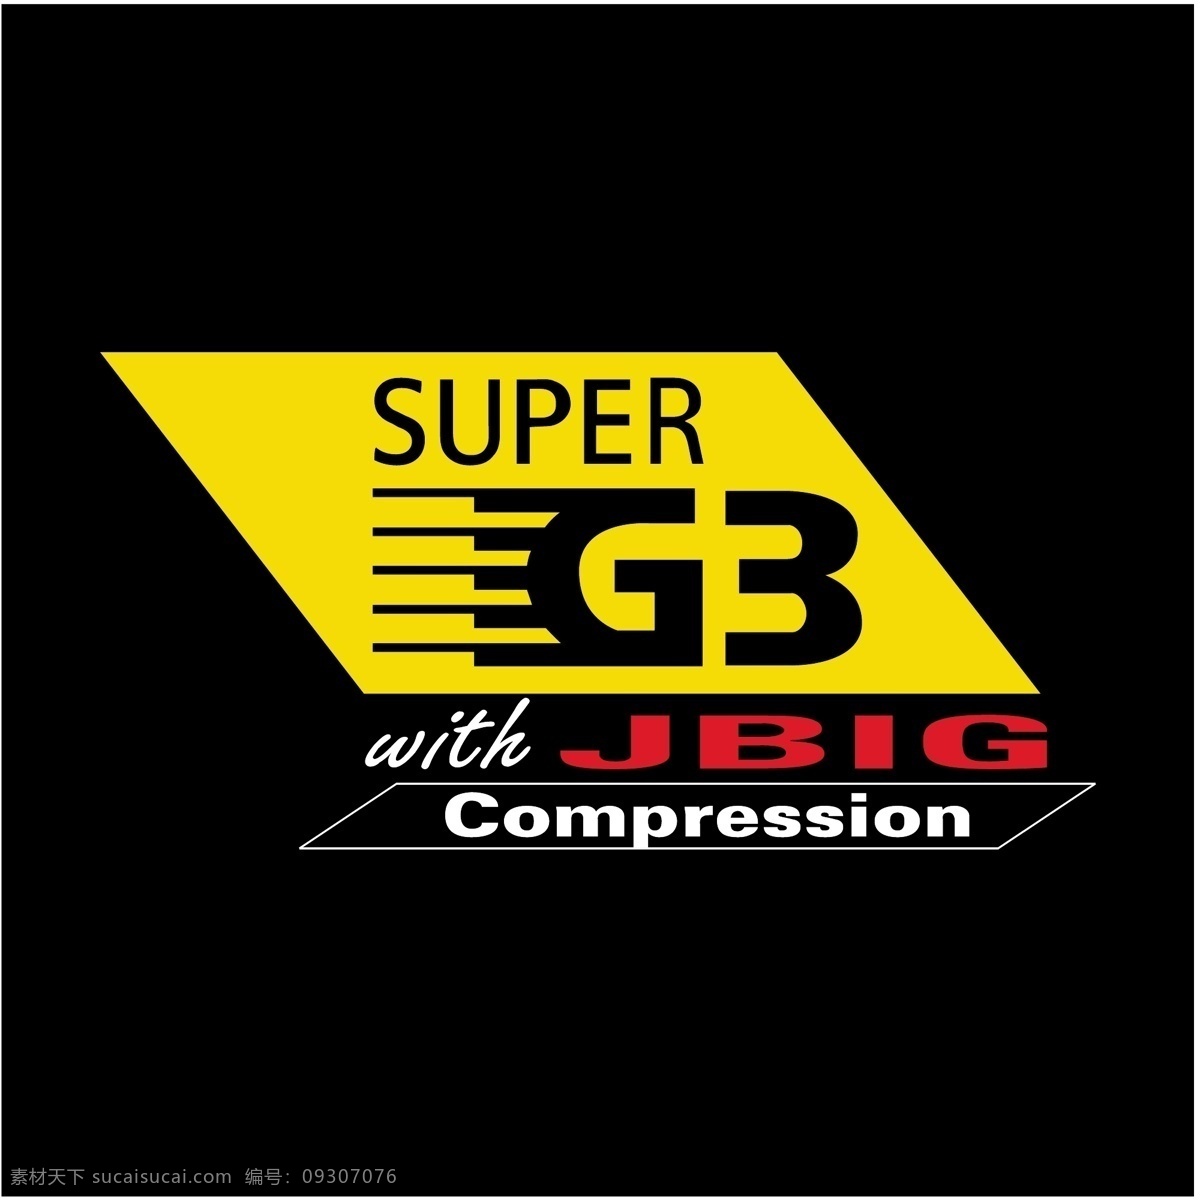 超级 g3 jbig 压缩 标识 公司 免费 品牌 品牌标识 商标 矢量标志下载 免费矢量标识 矢量 psd源文件 logo设计